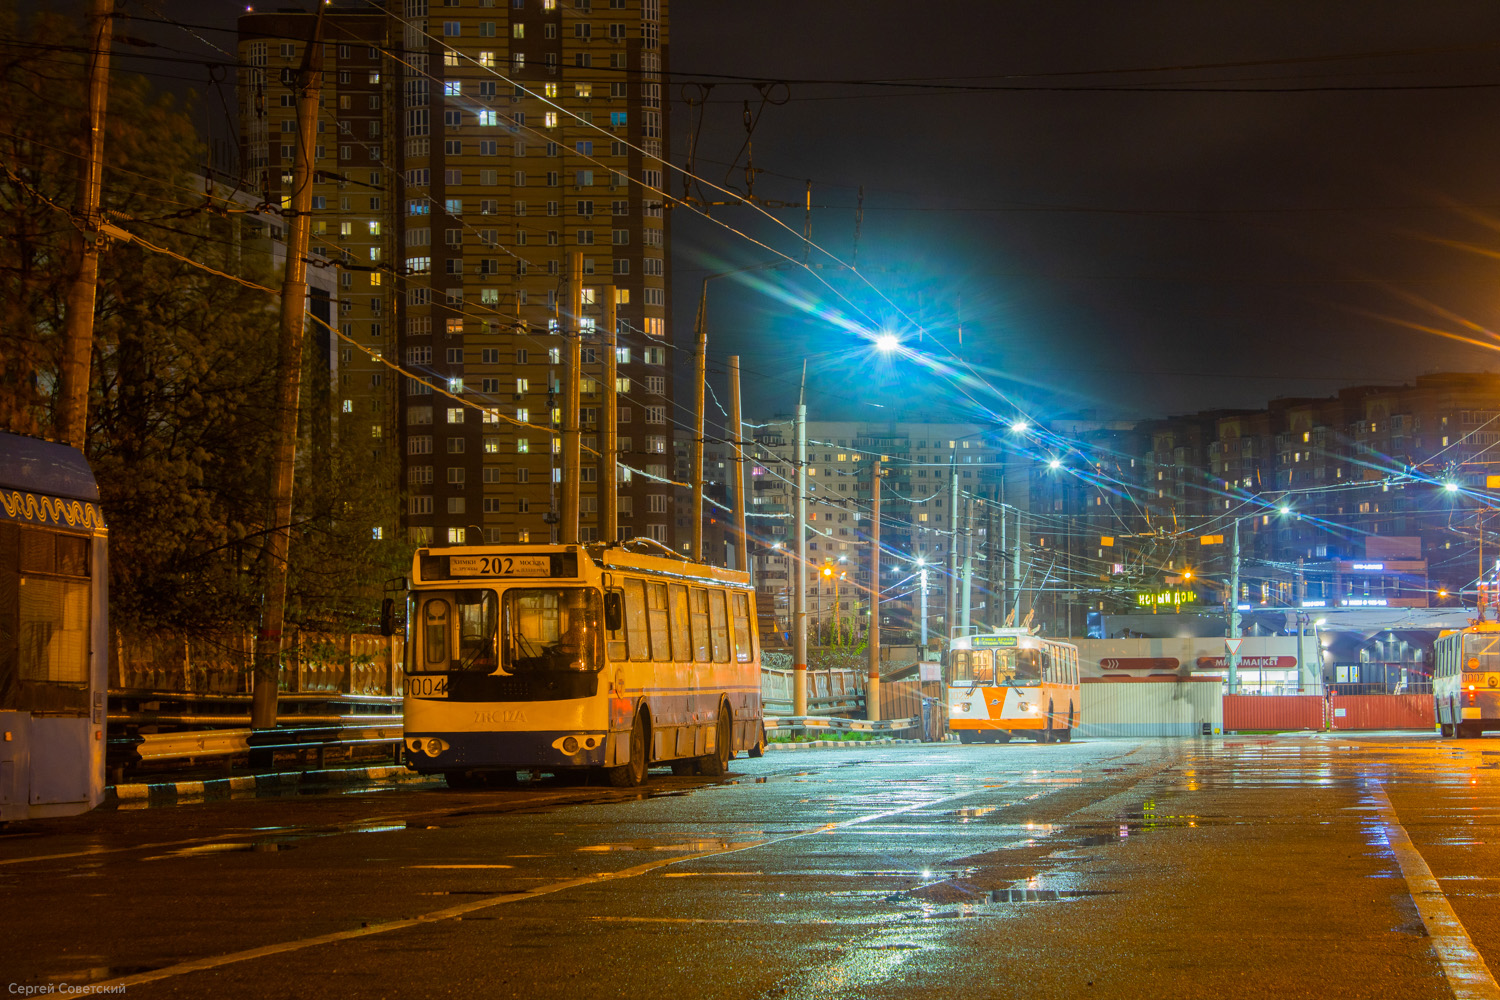 Химки — Разные фотографии; Химки — Троллейбусные линии и инфраструктура